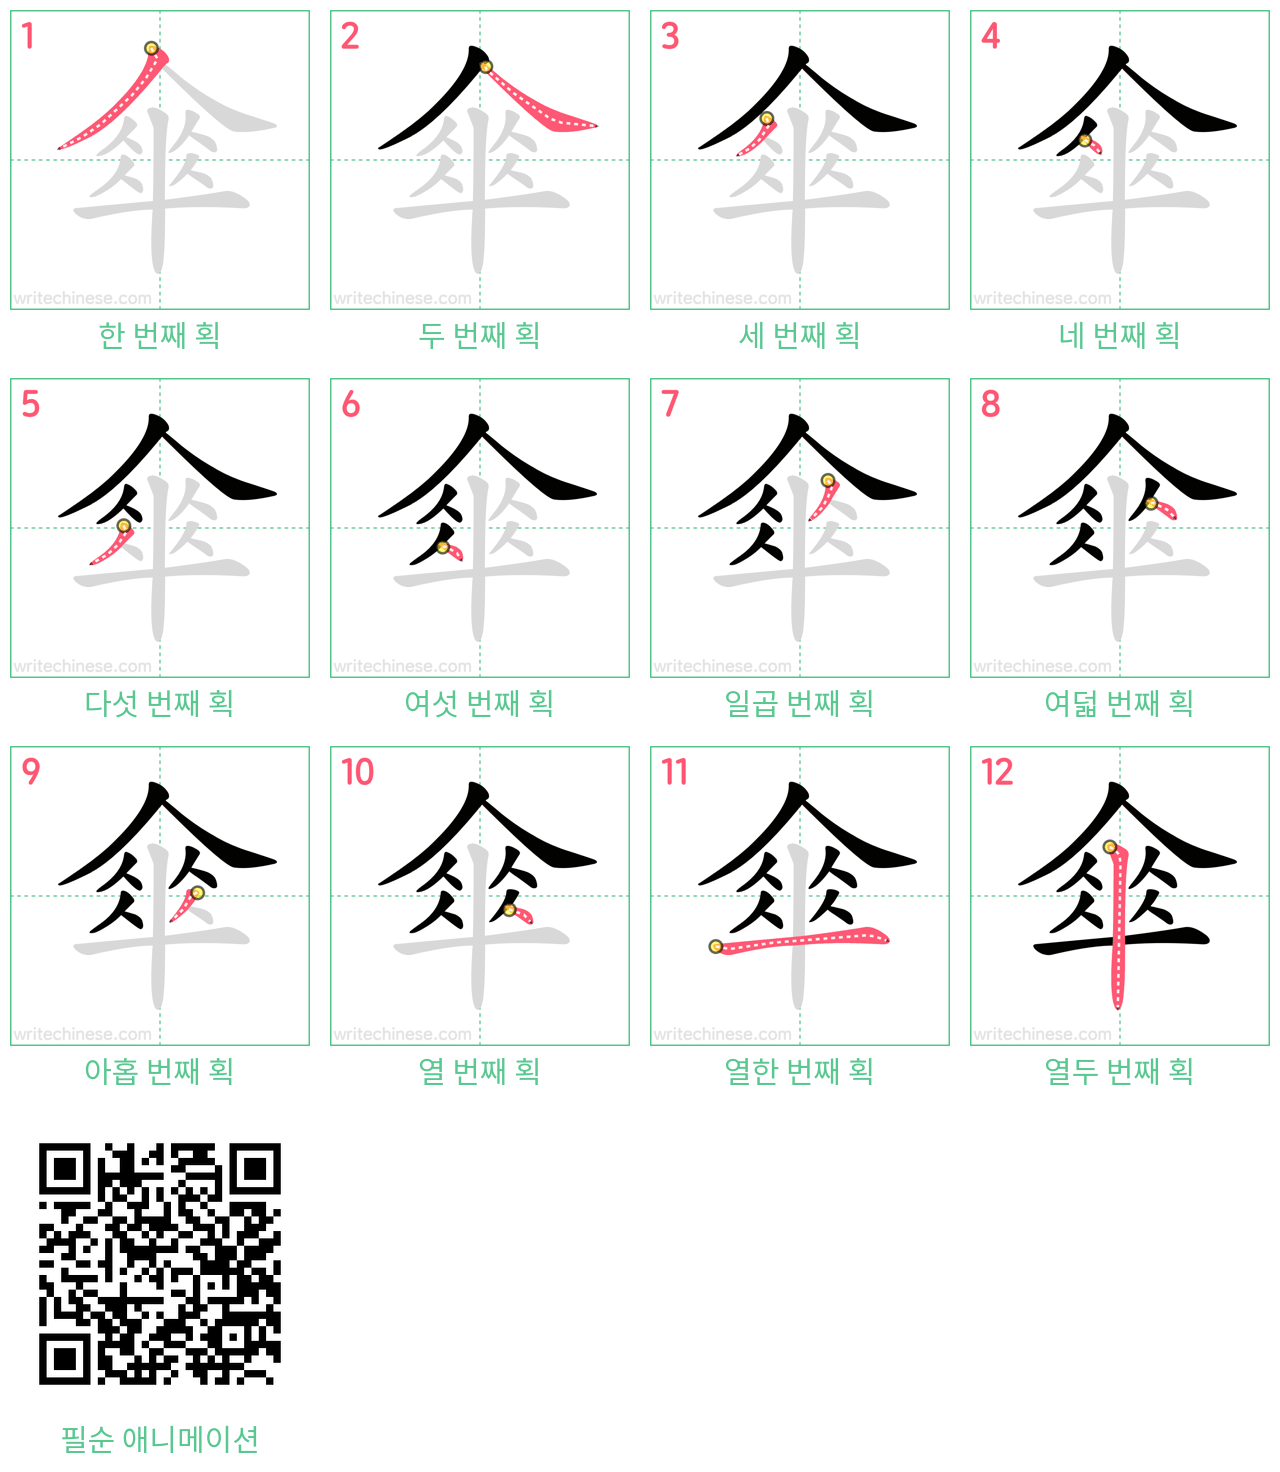 傘 step-by-step stroke order diagrams